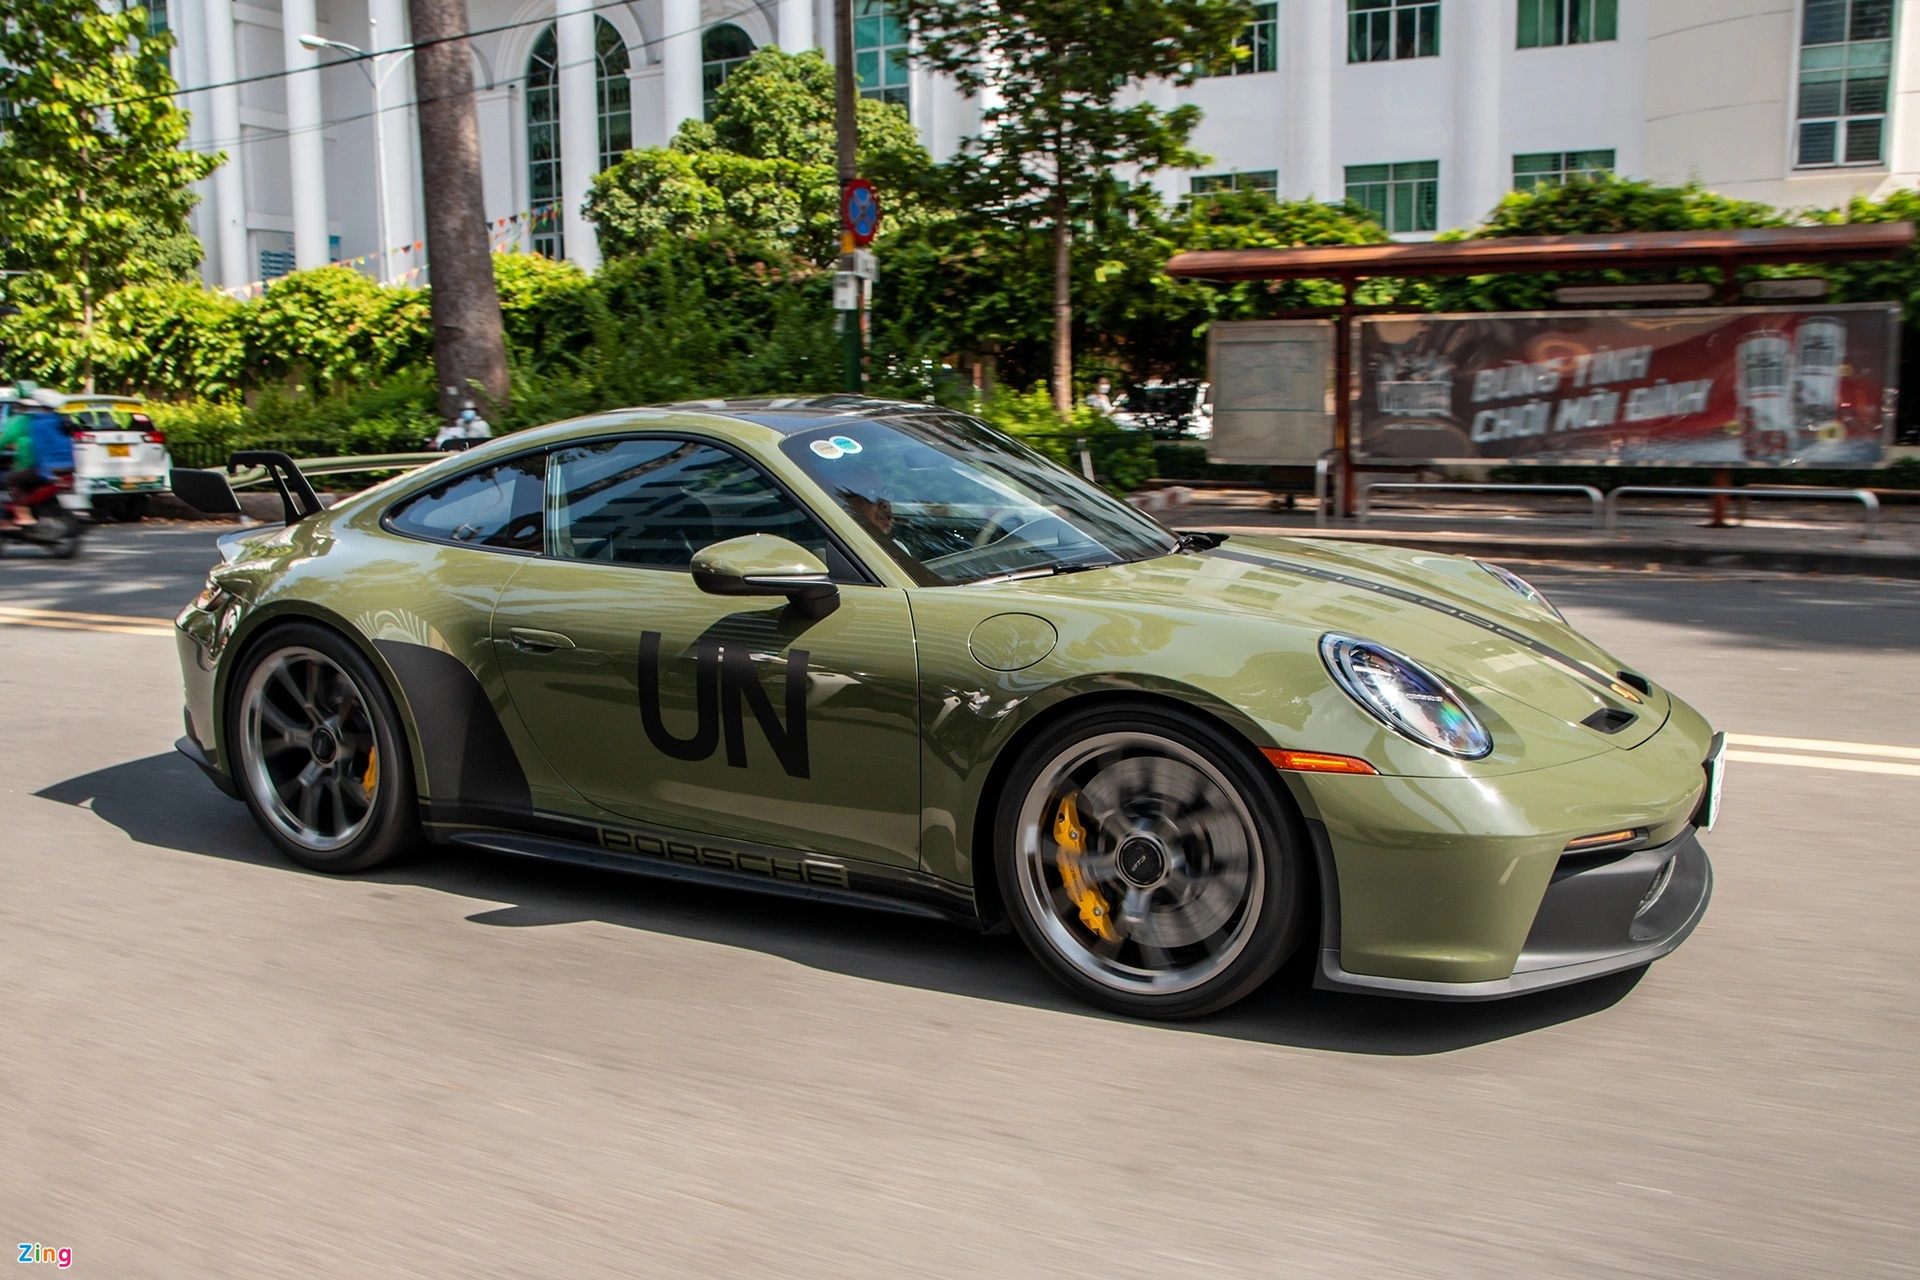 Thua kiện, Porsche chấp nhận đền bù 80 triệu USD cho chủ xe - Ảnh 1.